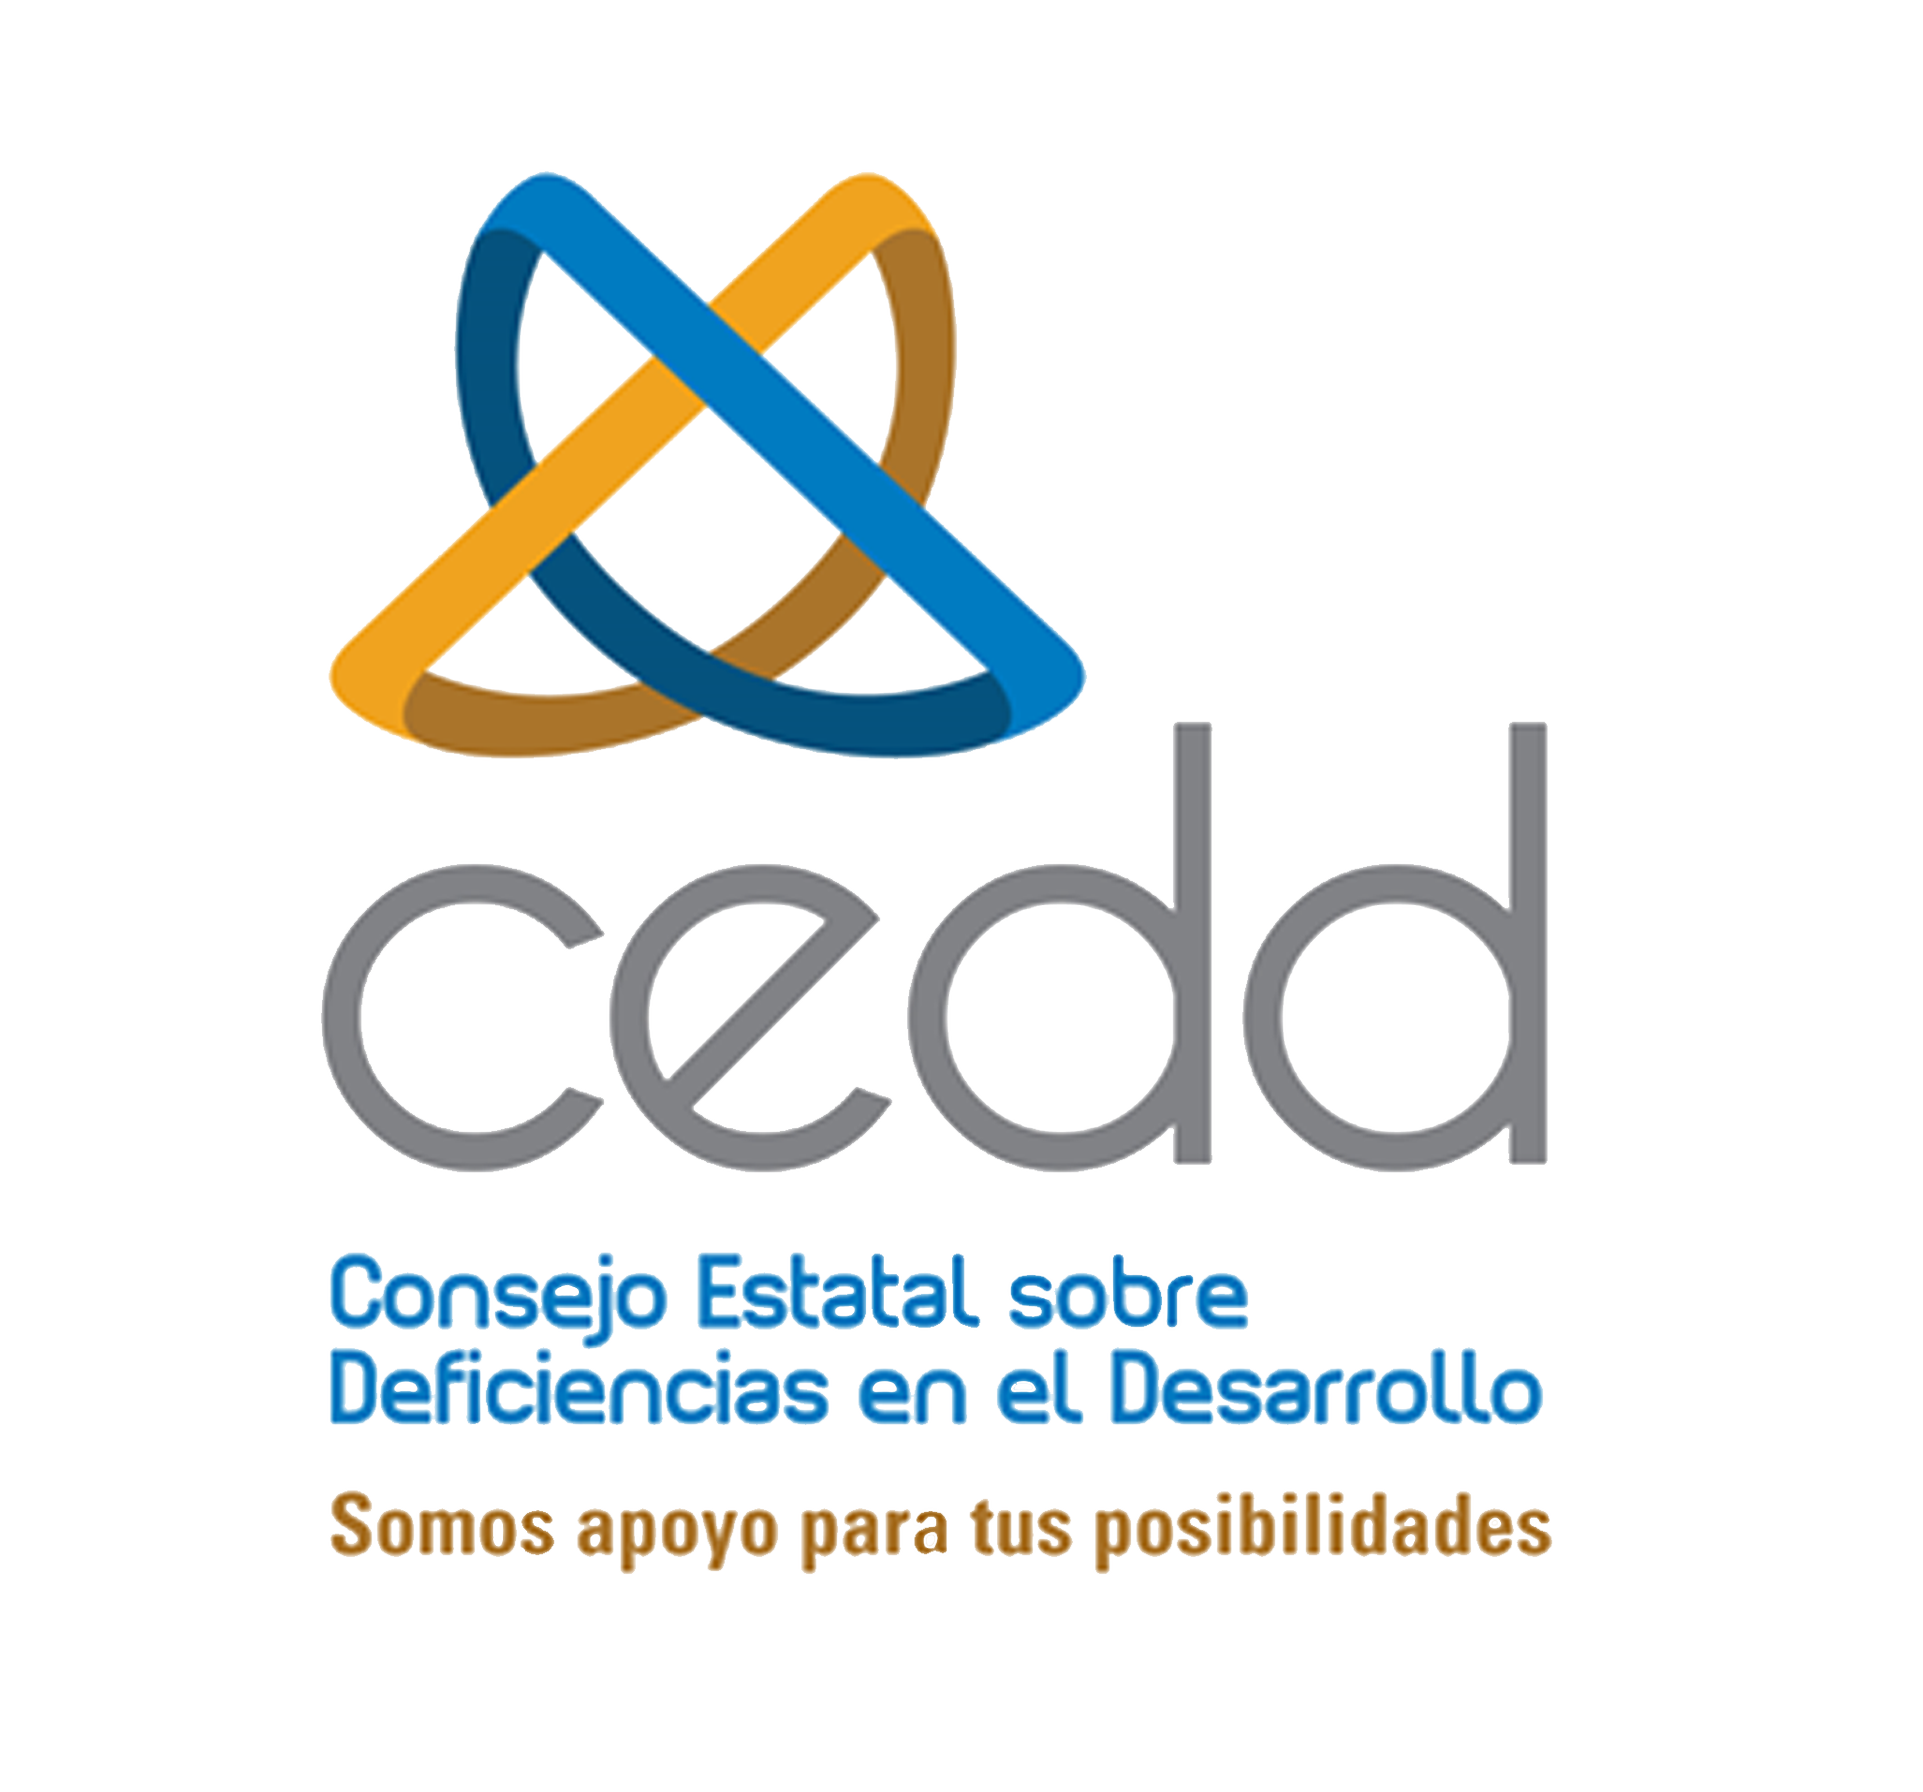 Logo CEDD con frase Somos apoyo para tus posibilidades